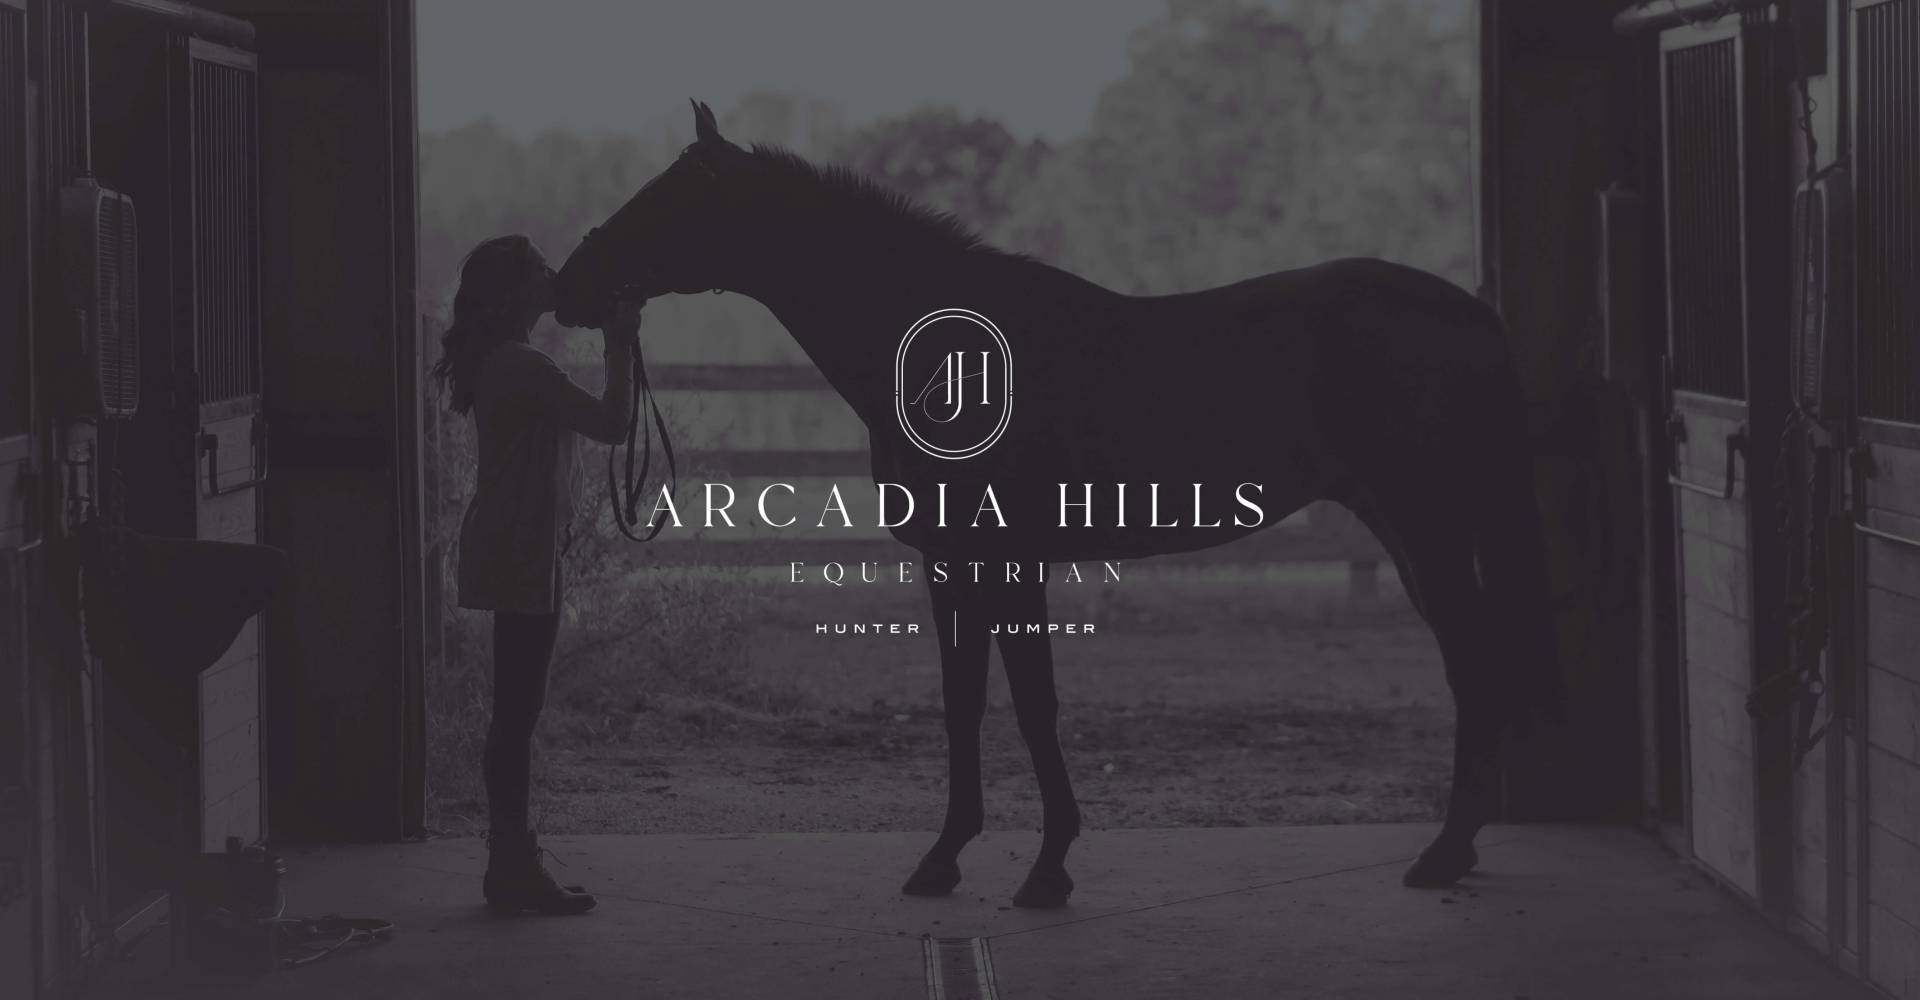 Arcadia Hills Equestrian